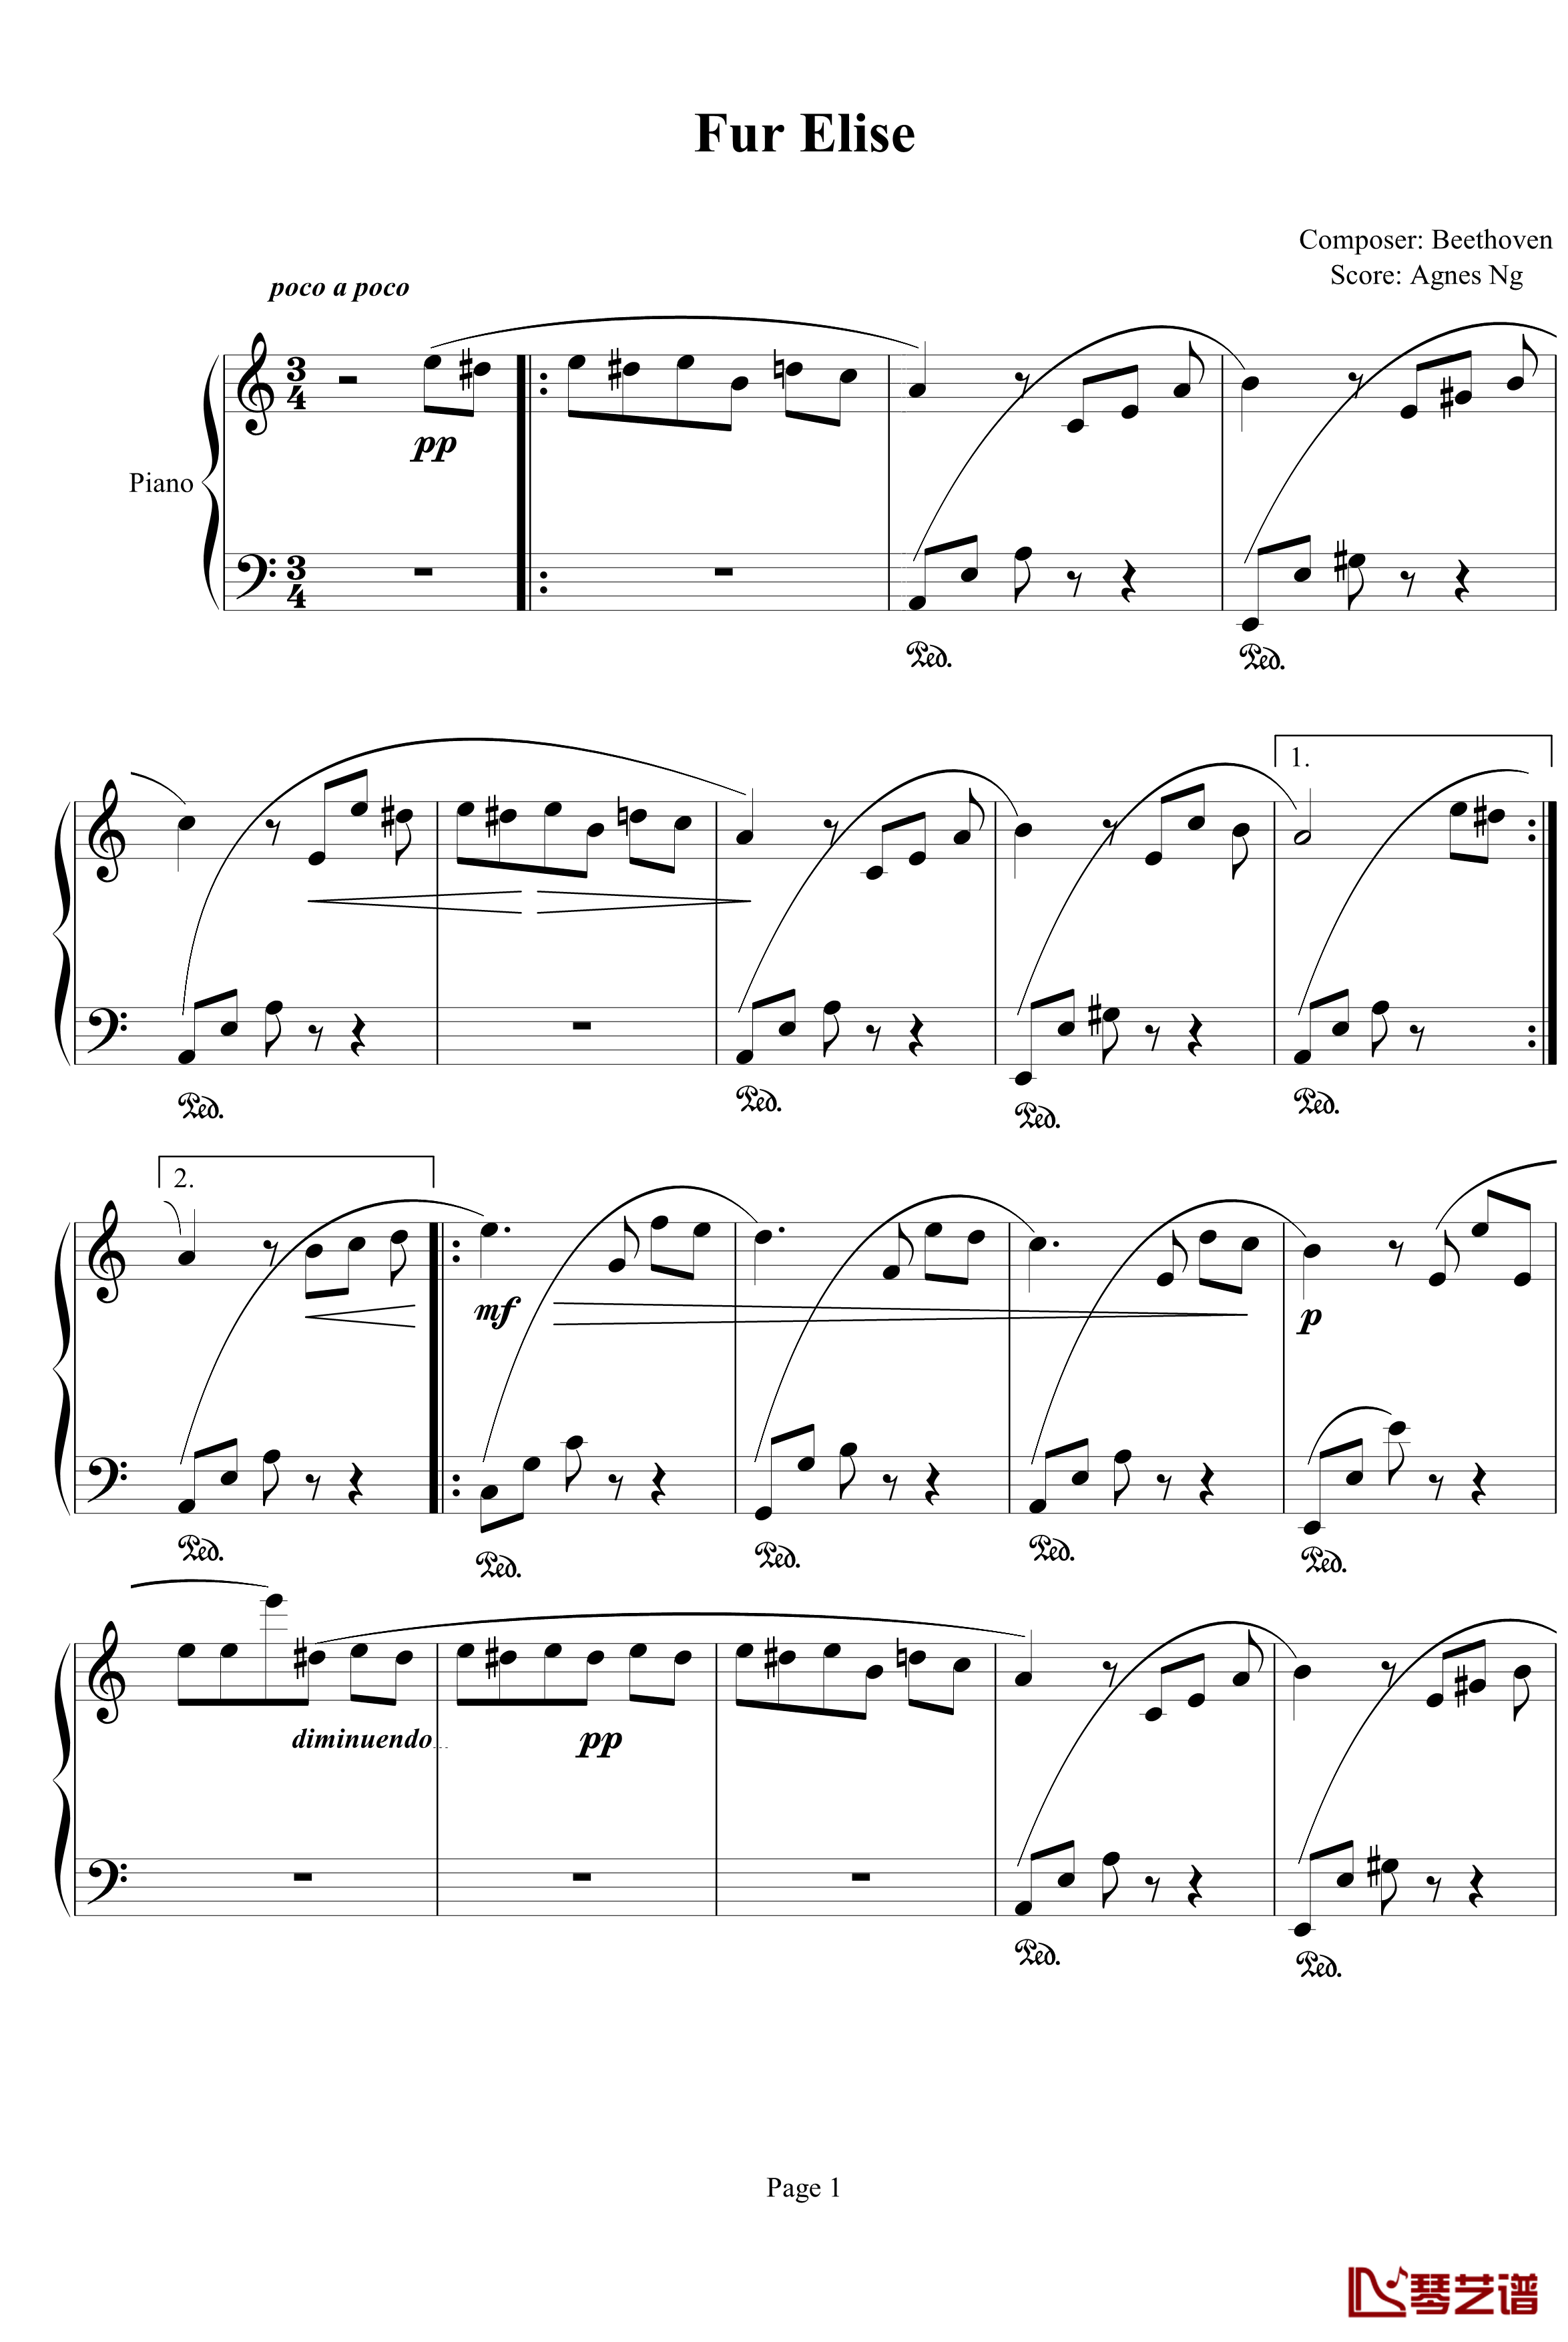 Fur Elise钢琴谱-agnesng版-贝多芬-beethoven